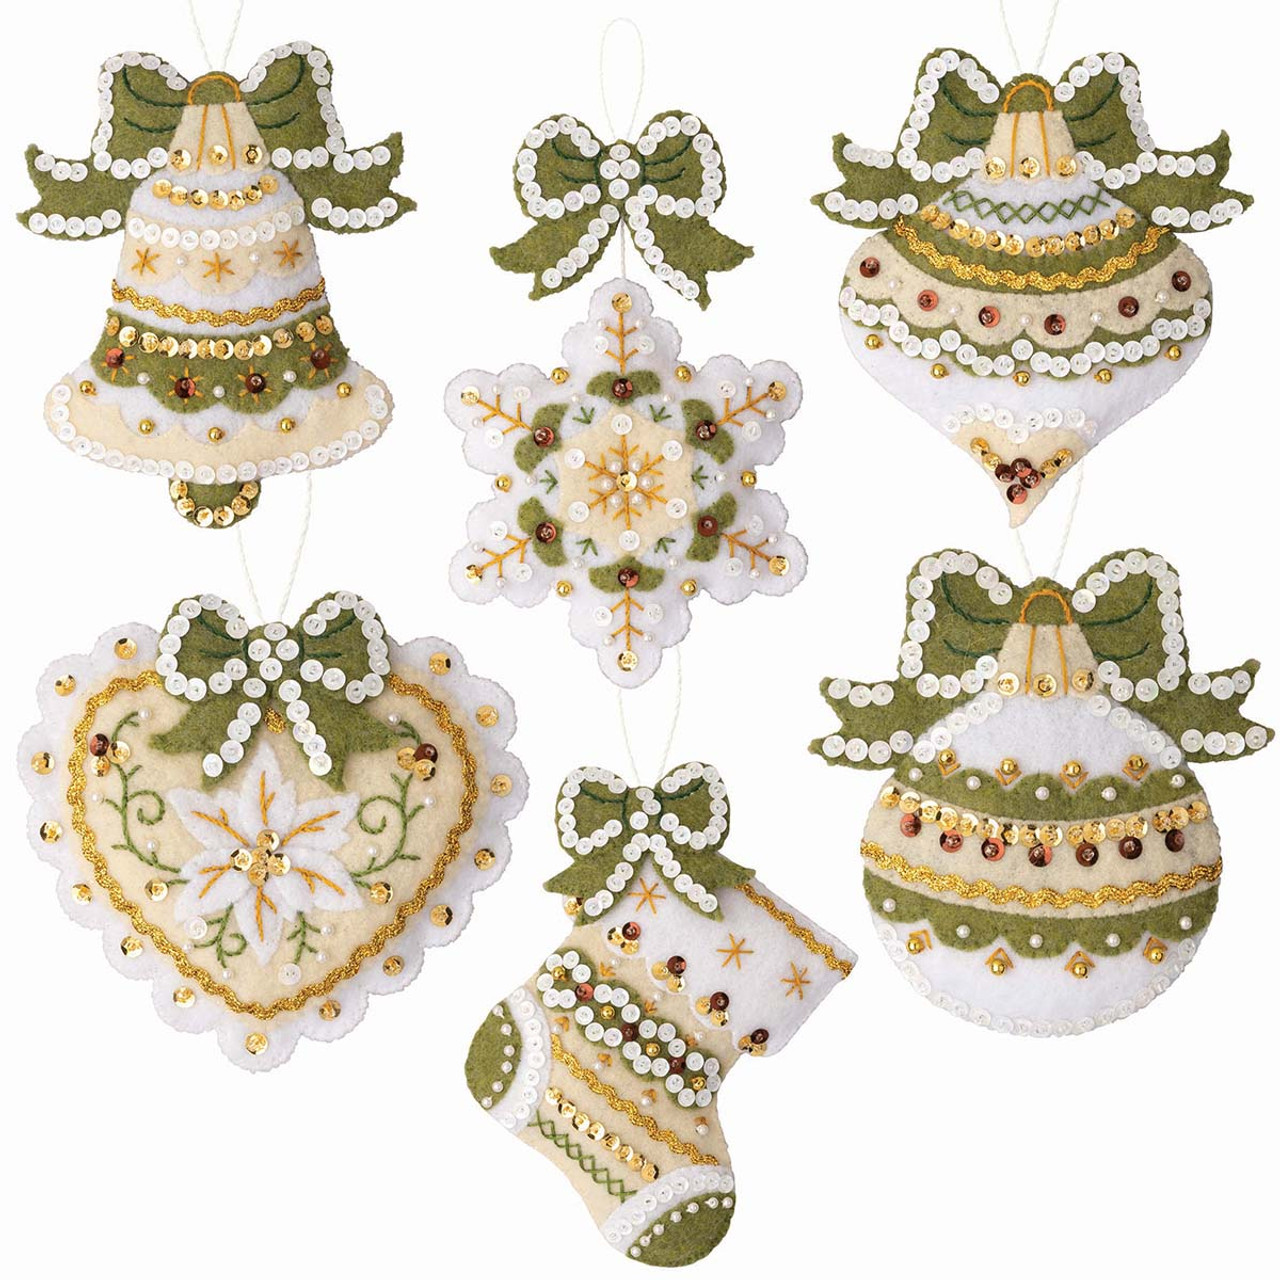 Bucilla Vintage Halloween Ornaments Felt Applique Kit Review